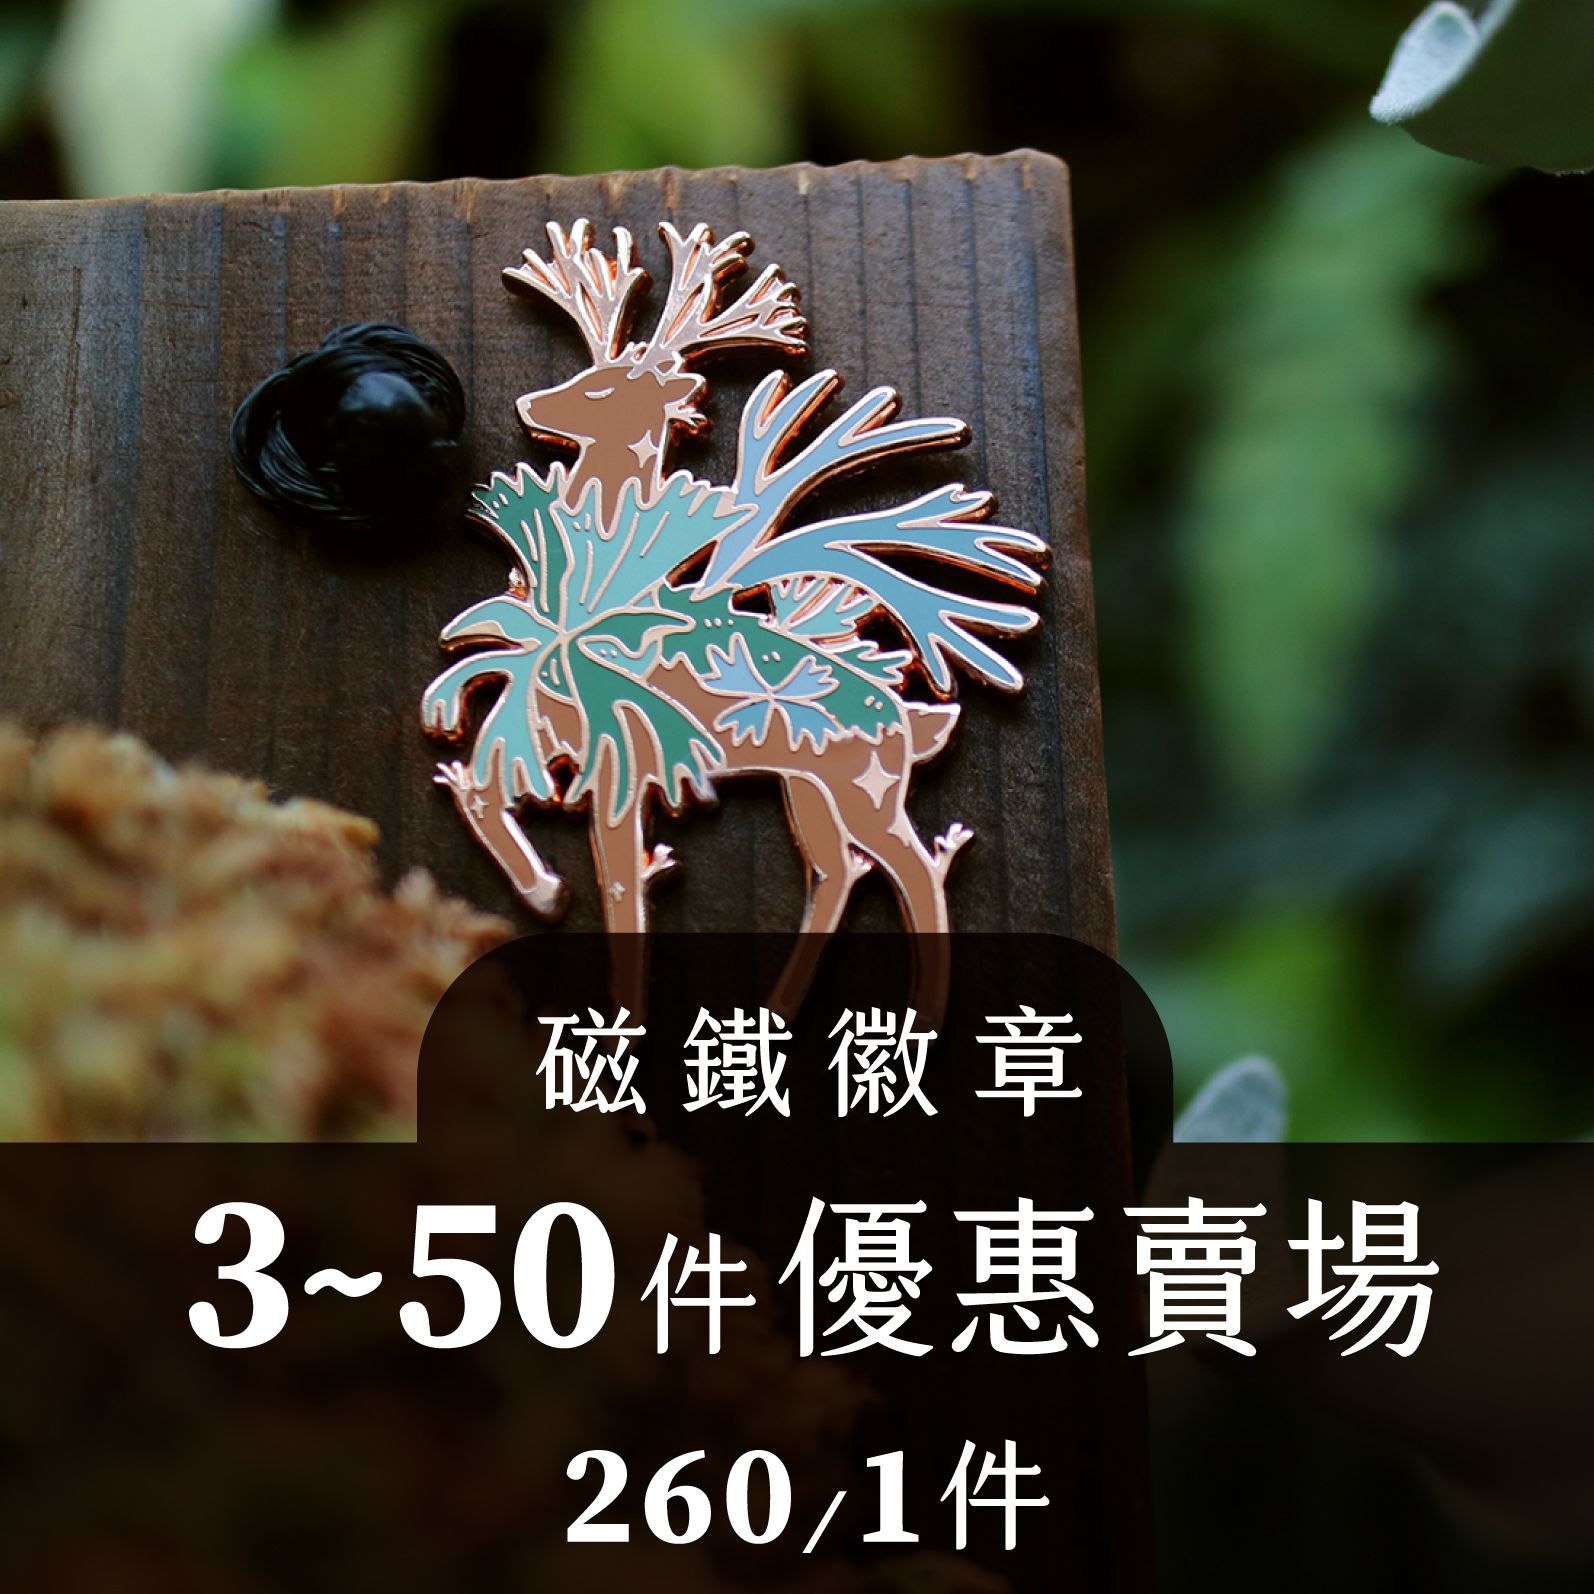 植物神獸徽章-全品相賣場-珍奇植生物-青青小樹設計